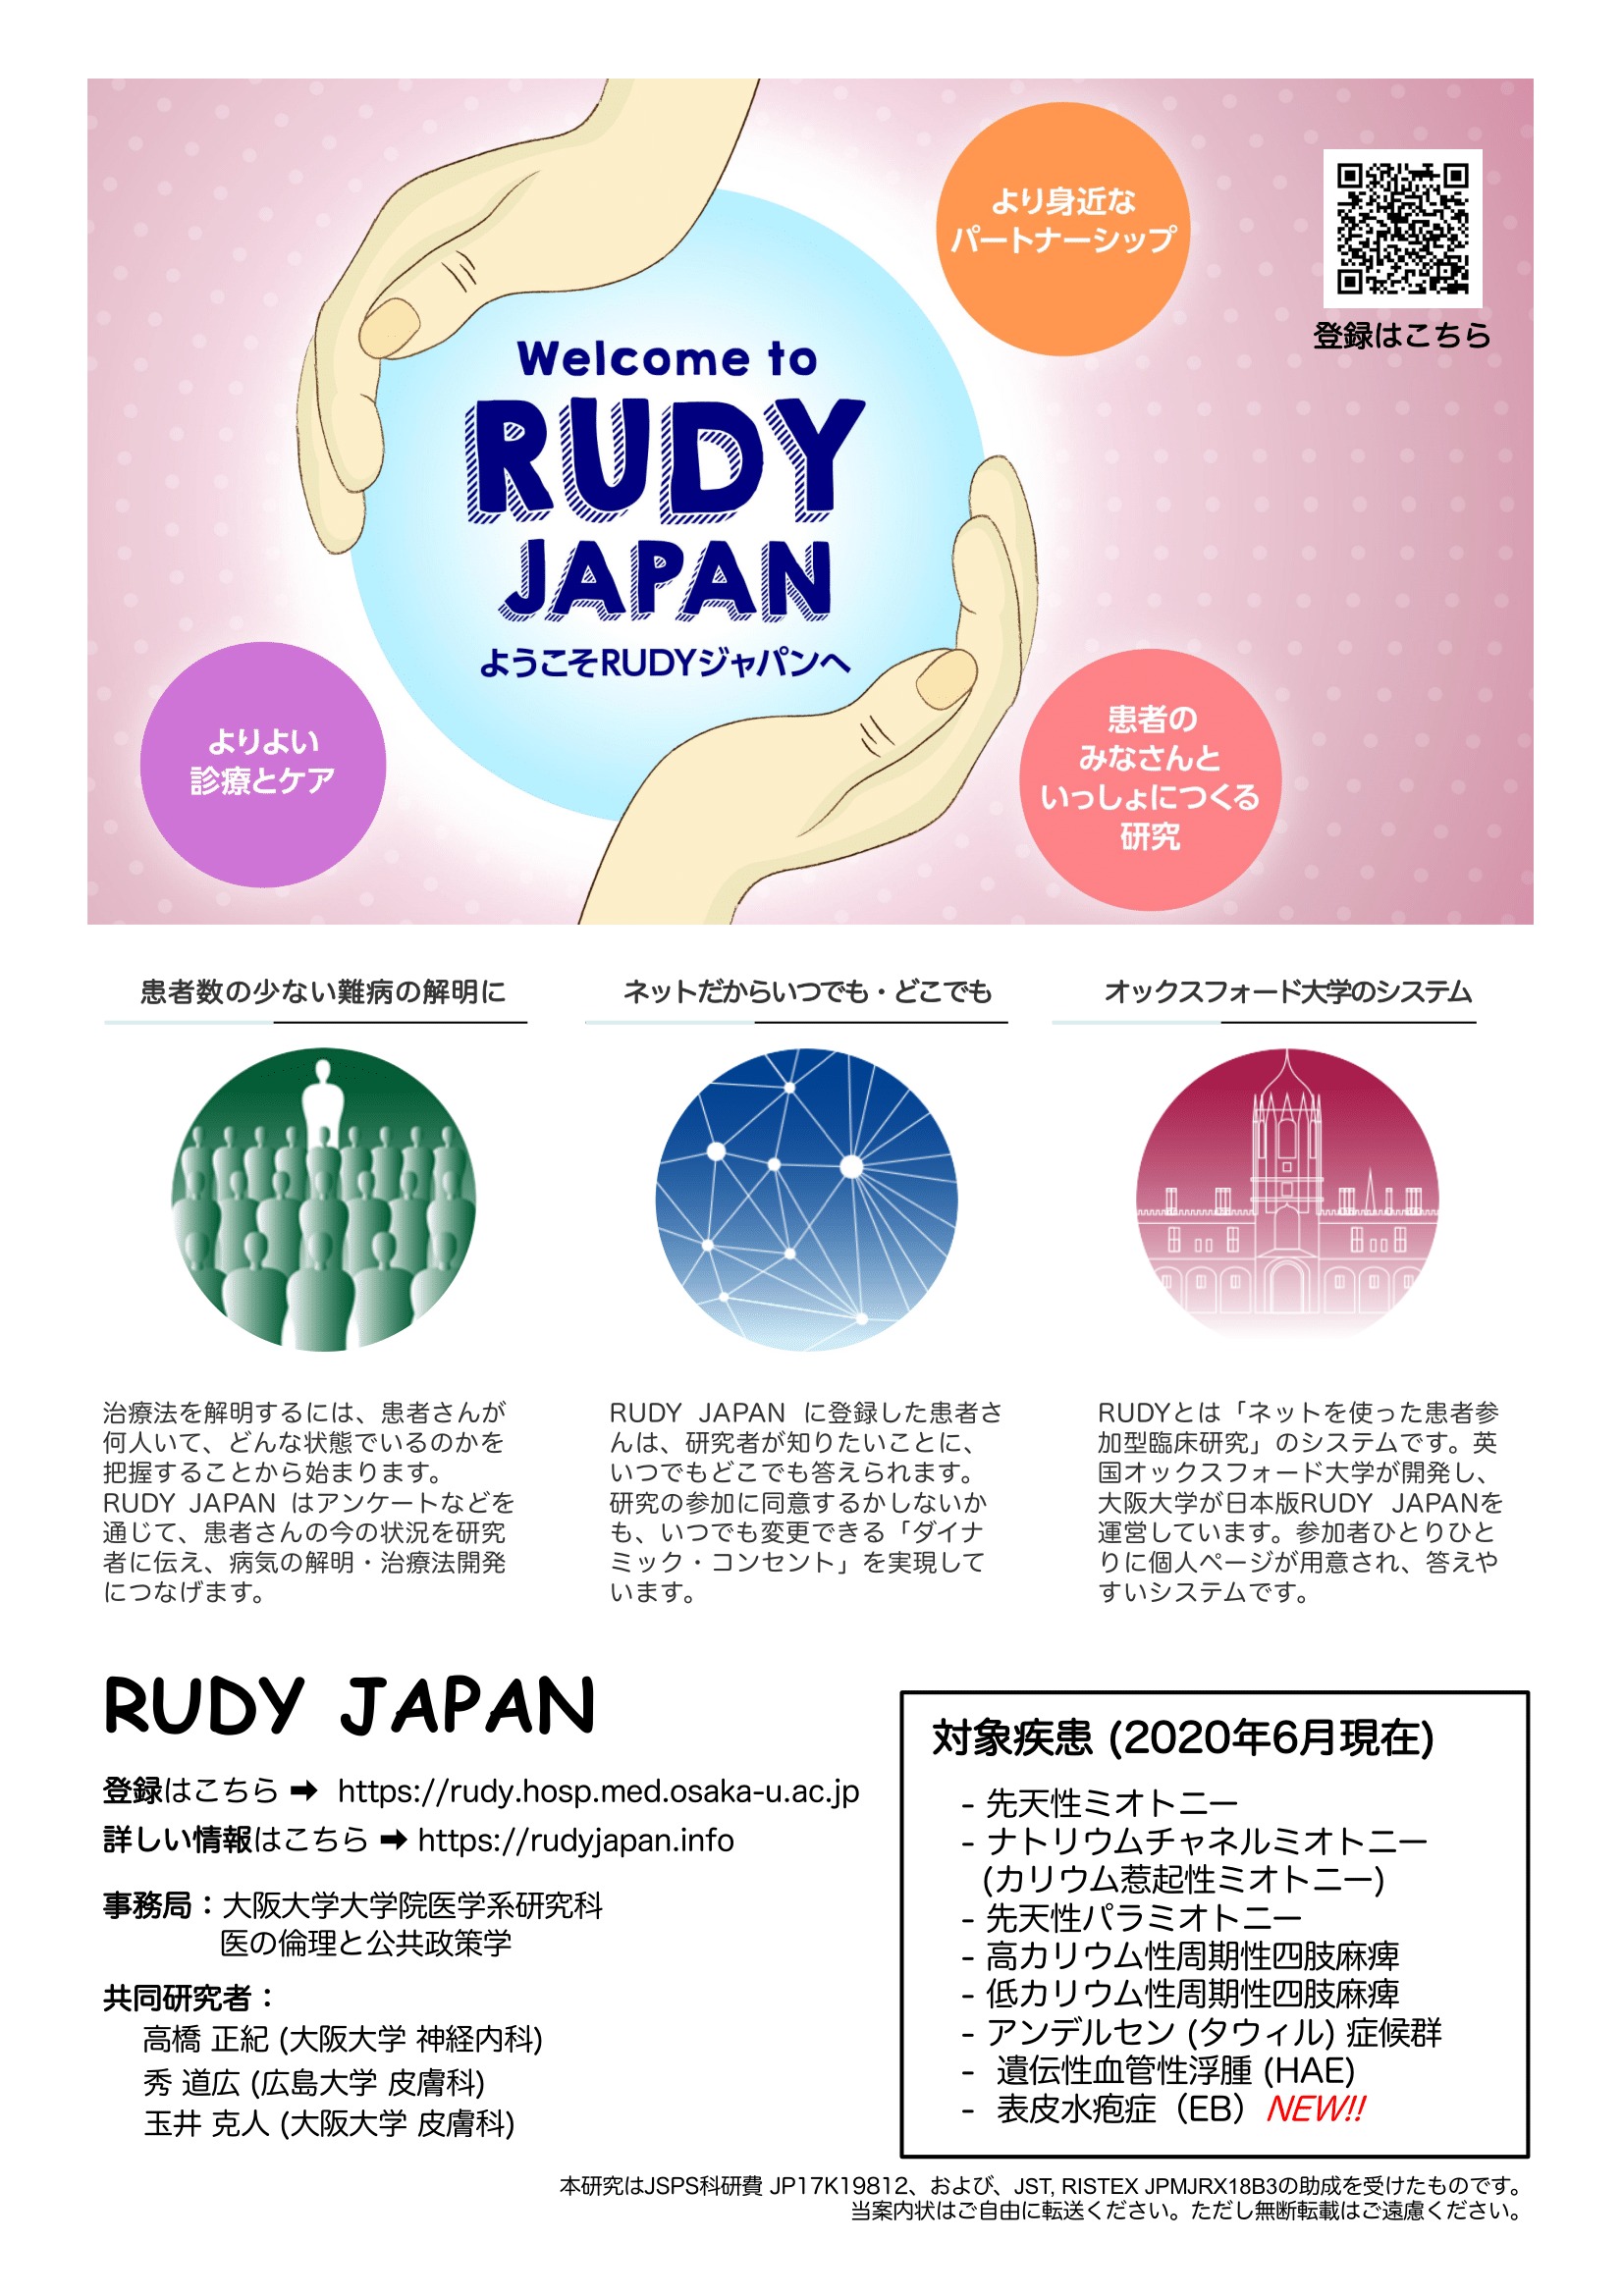 ネットから参加できる研究RUDY JAPANのご案内